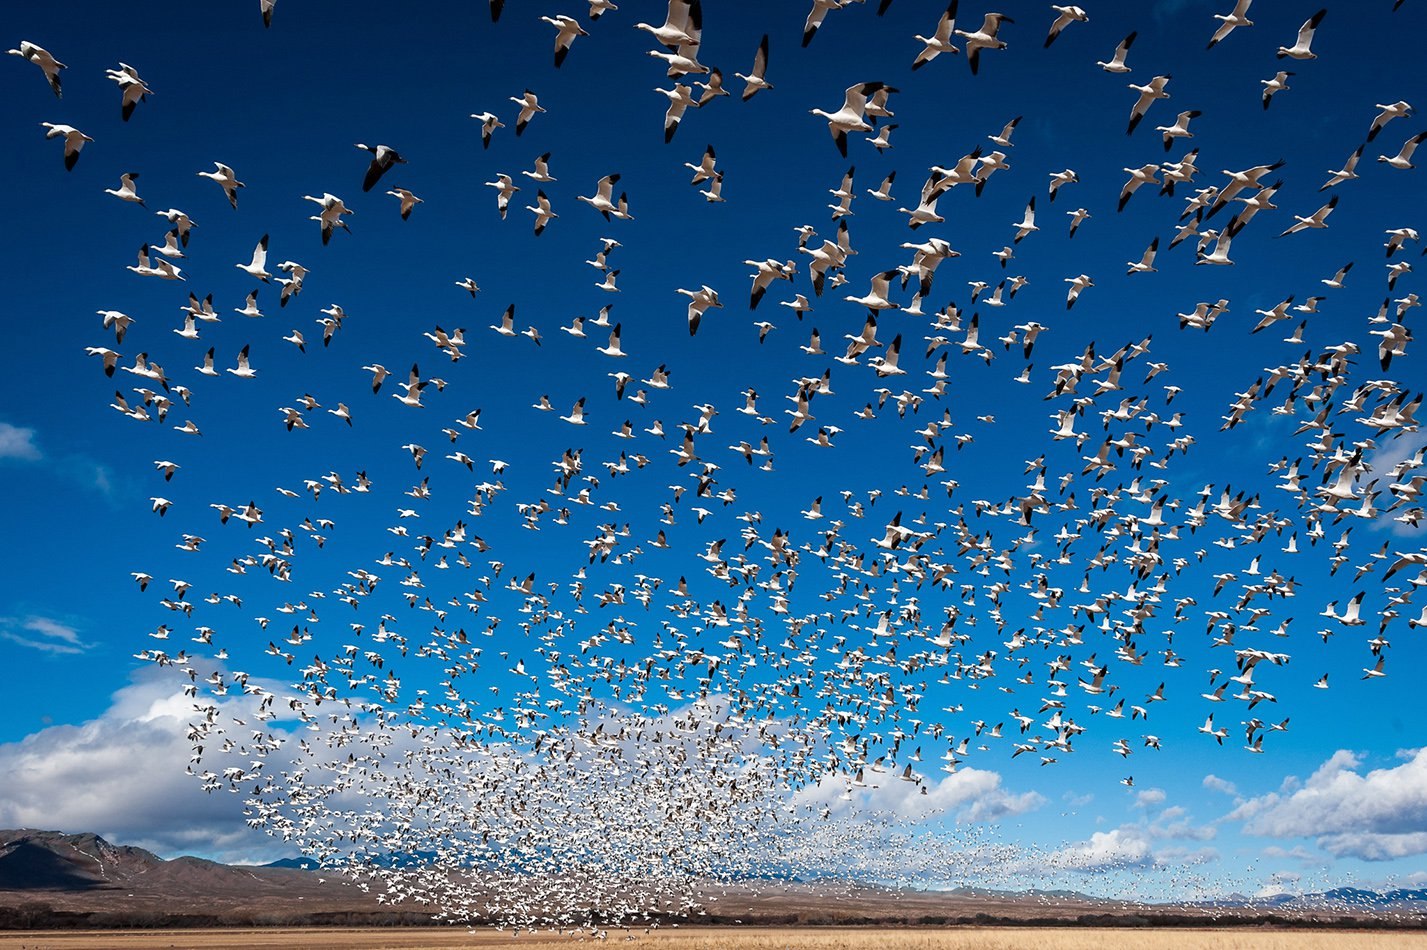 Фото летящих птиц: как фотографировать красиво